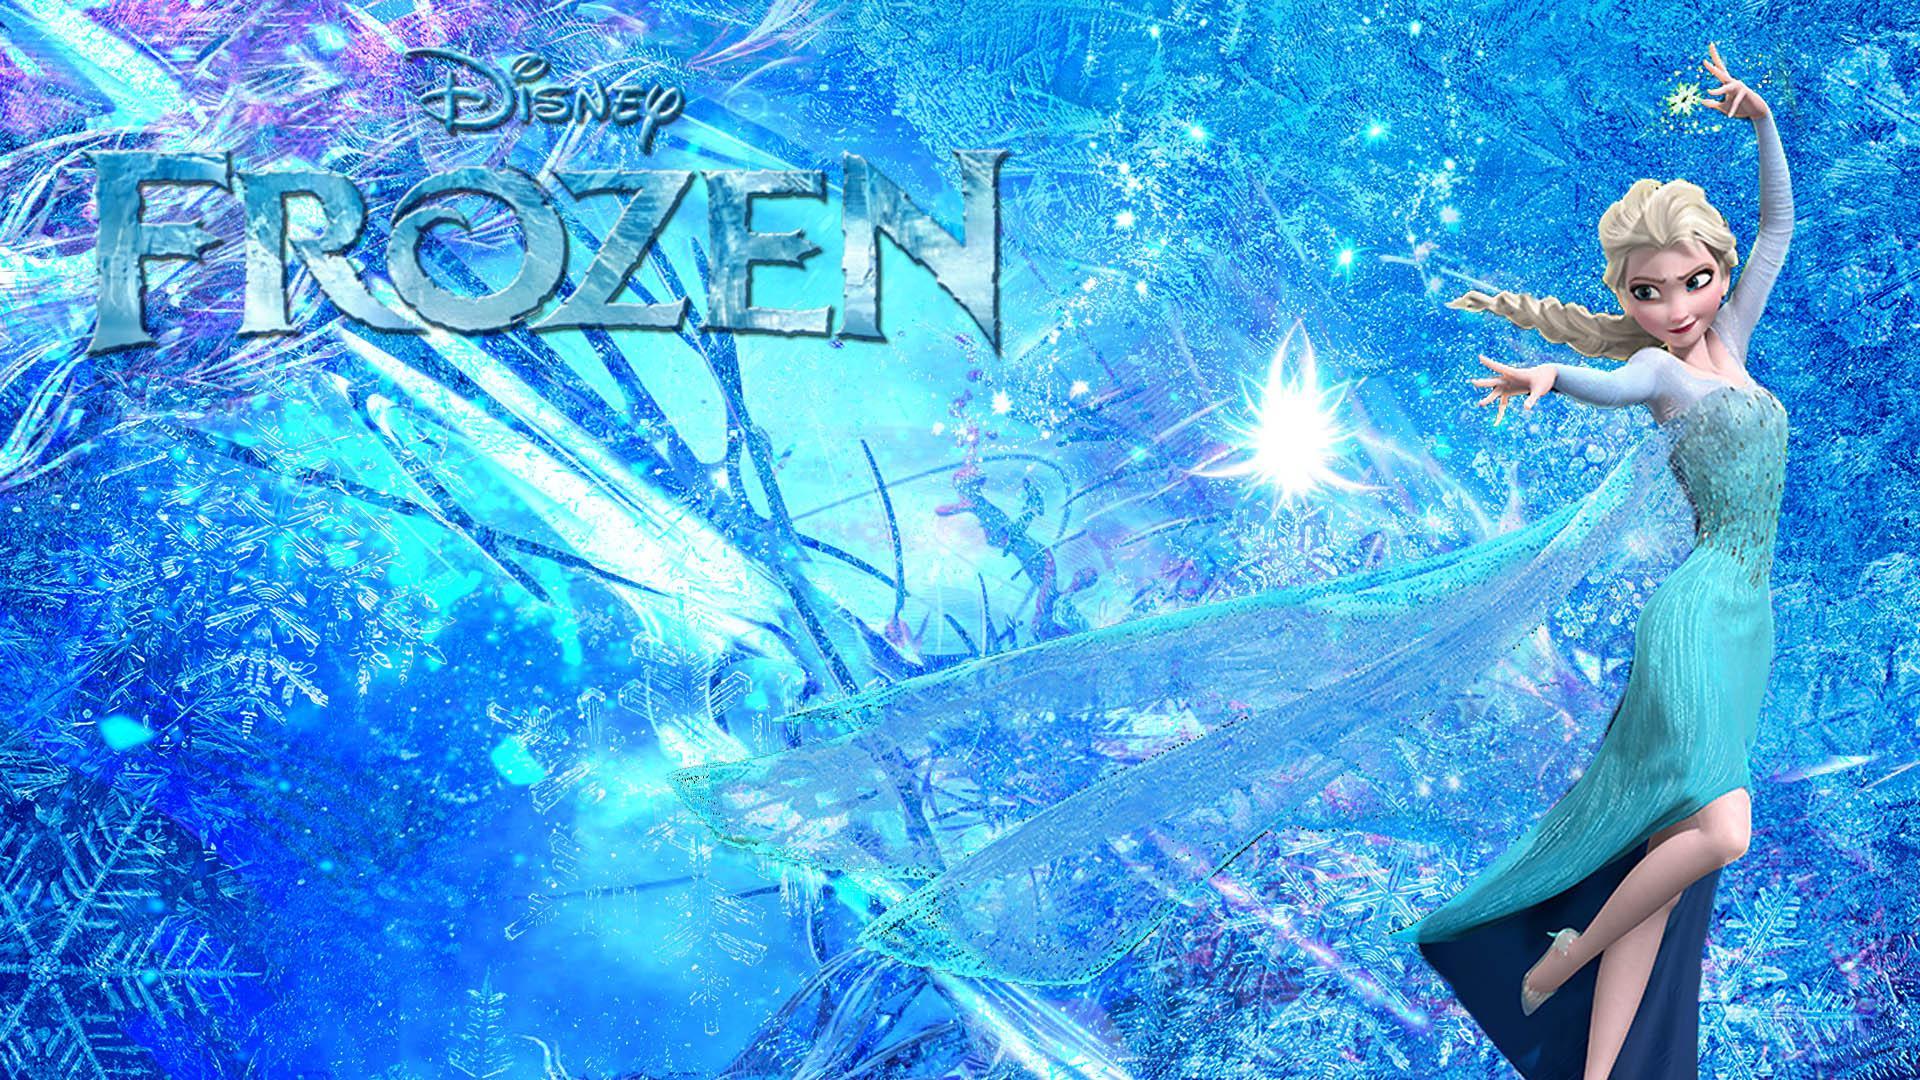 Disney Frozen Elsa HD desktop wallpaper, Widescreen, High